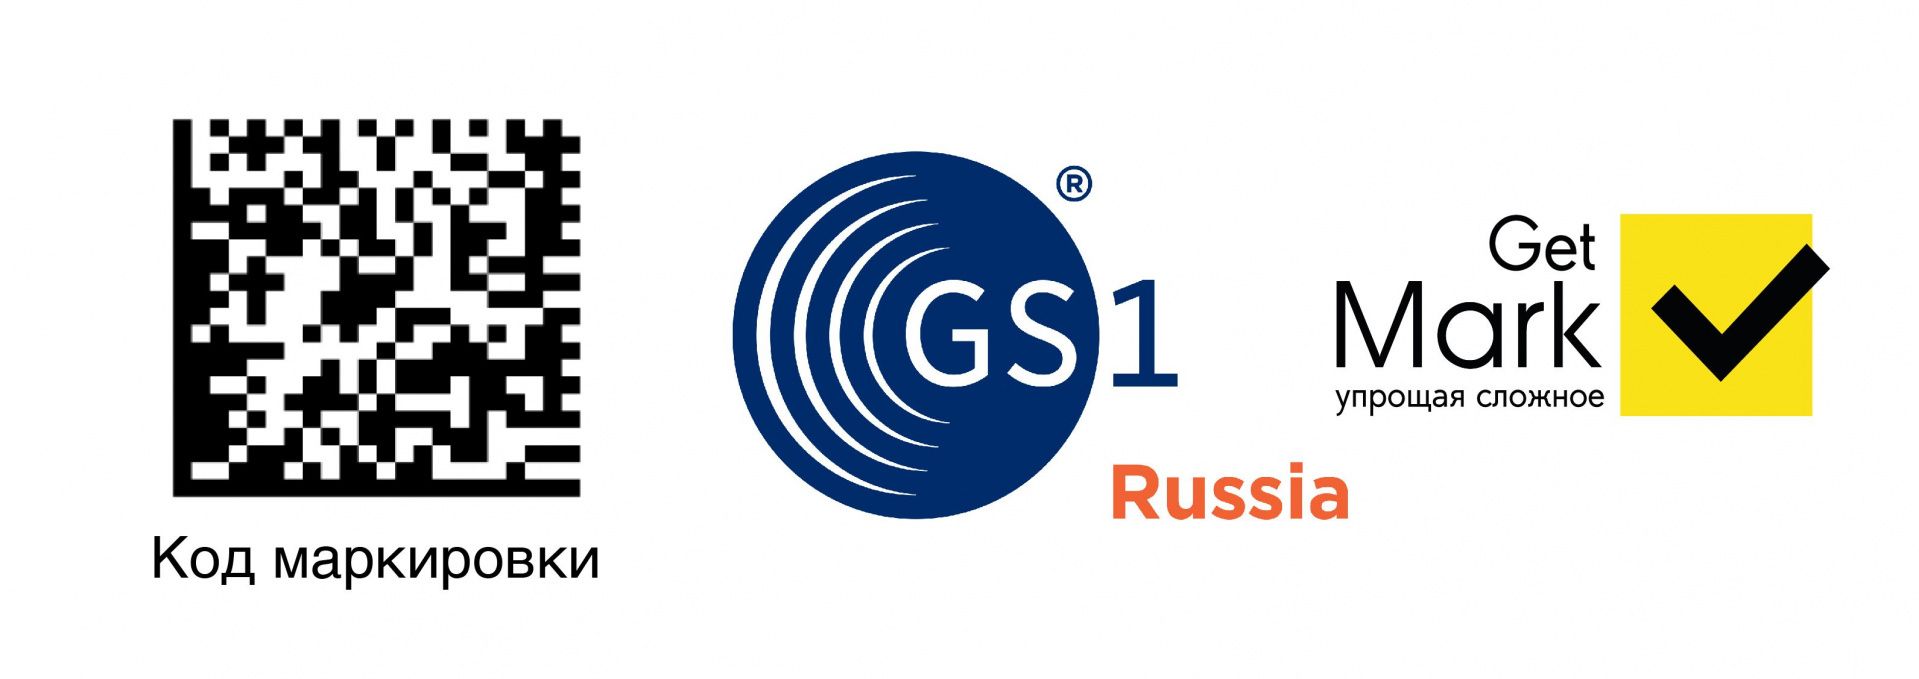 Как зарегистрироваться в GS1 рус для маркировки